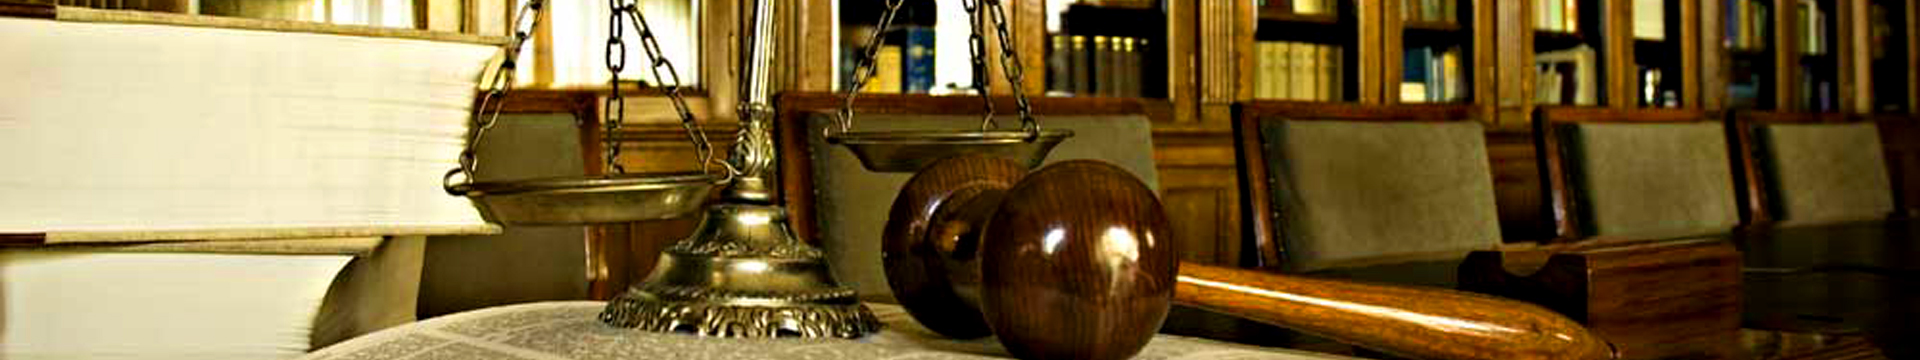 Ener Avukatlık - Hukuk Bürosu